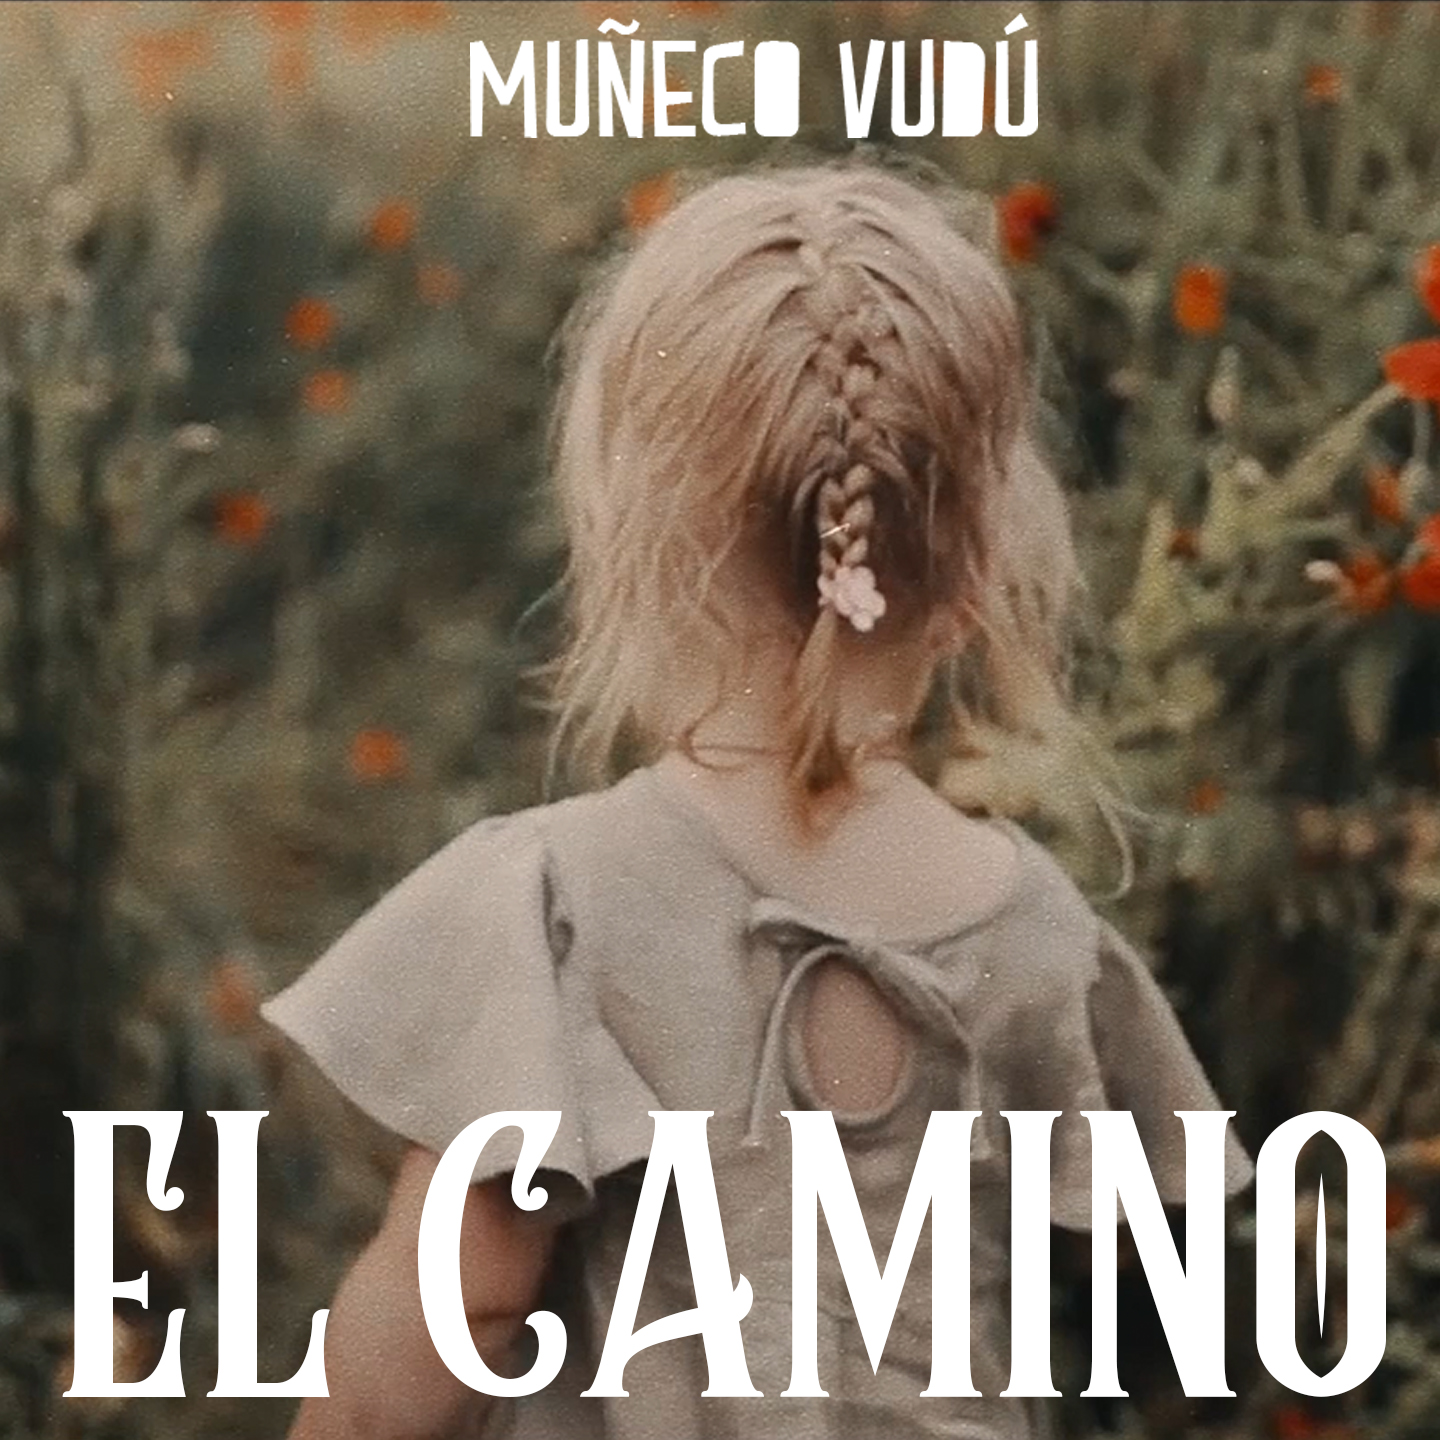 Muñeco Vudú - El camino (Video)